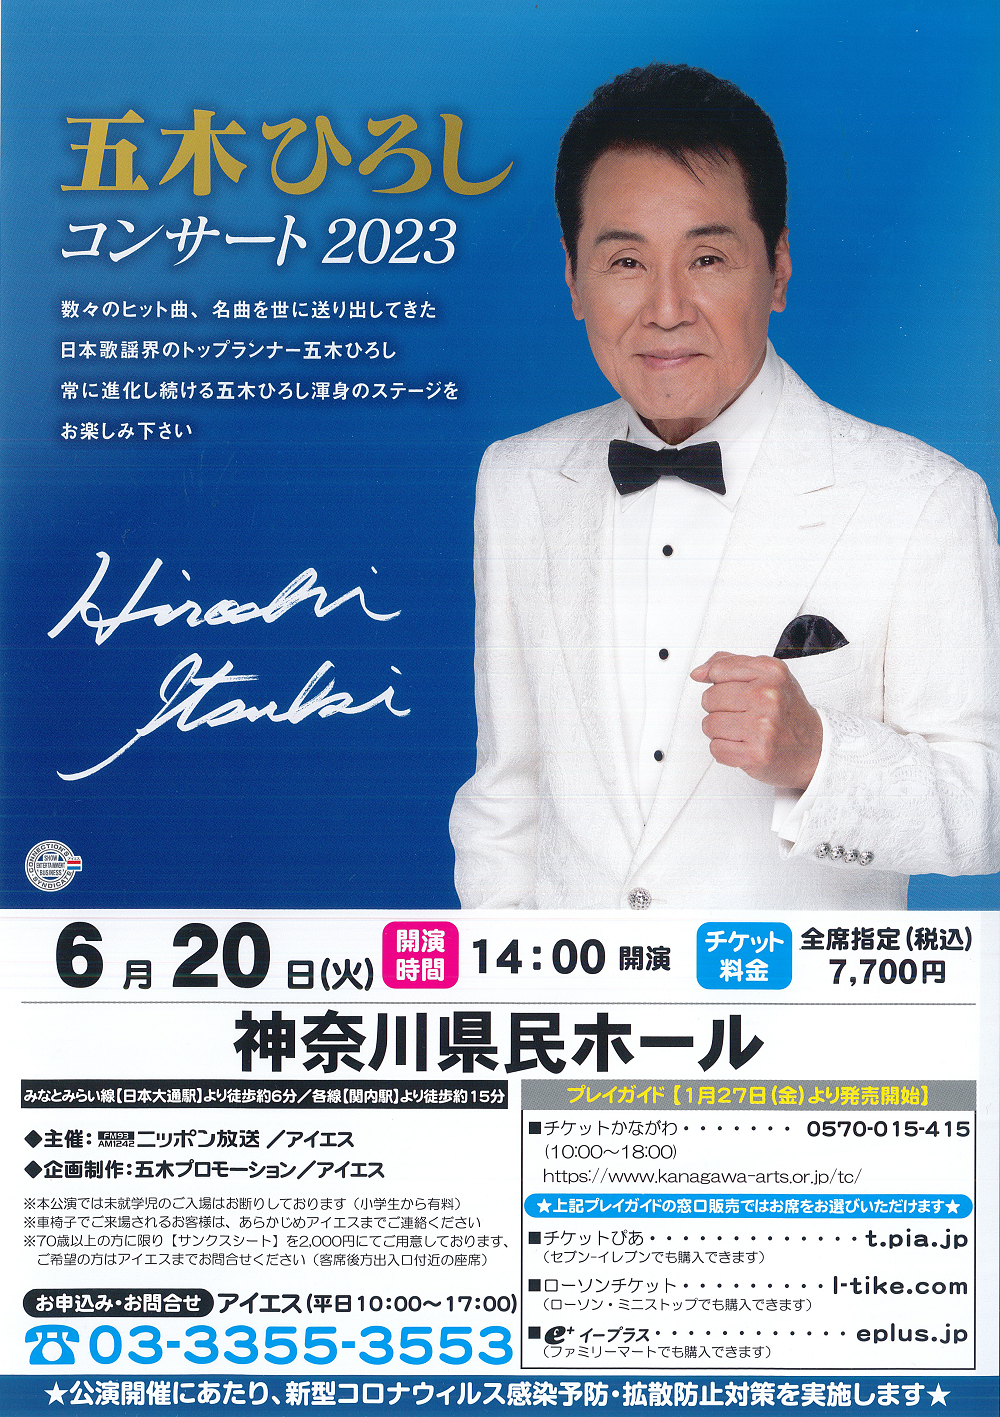 五木ひろし コンサート 2023年6月20日 神奈川県民ホール チケット